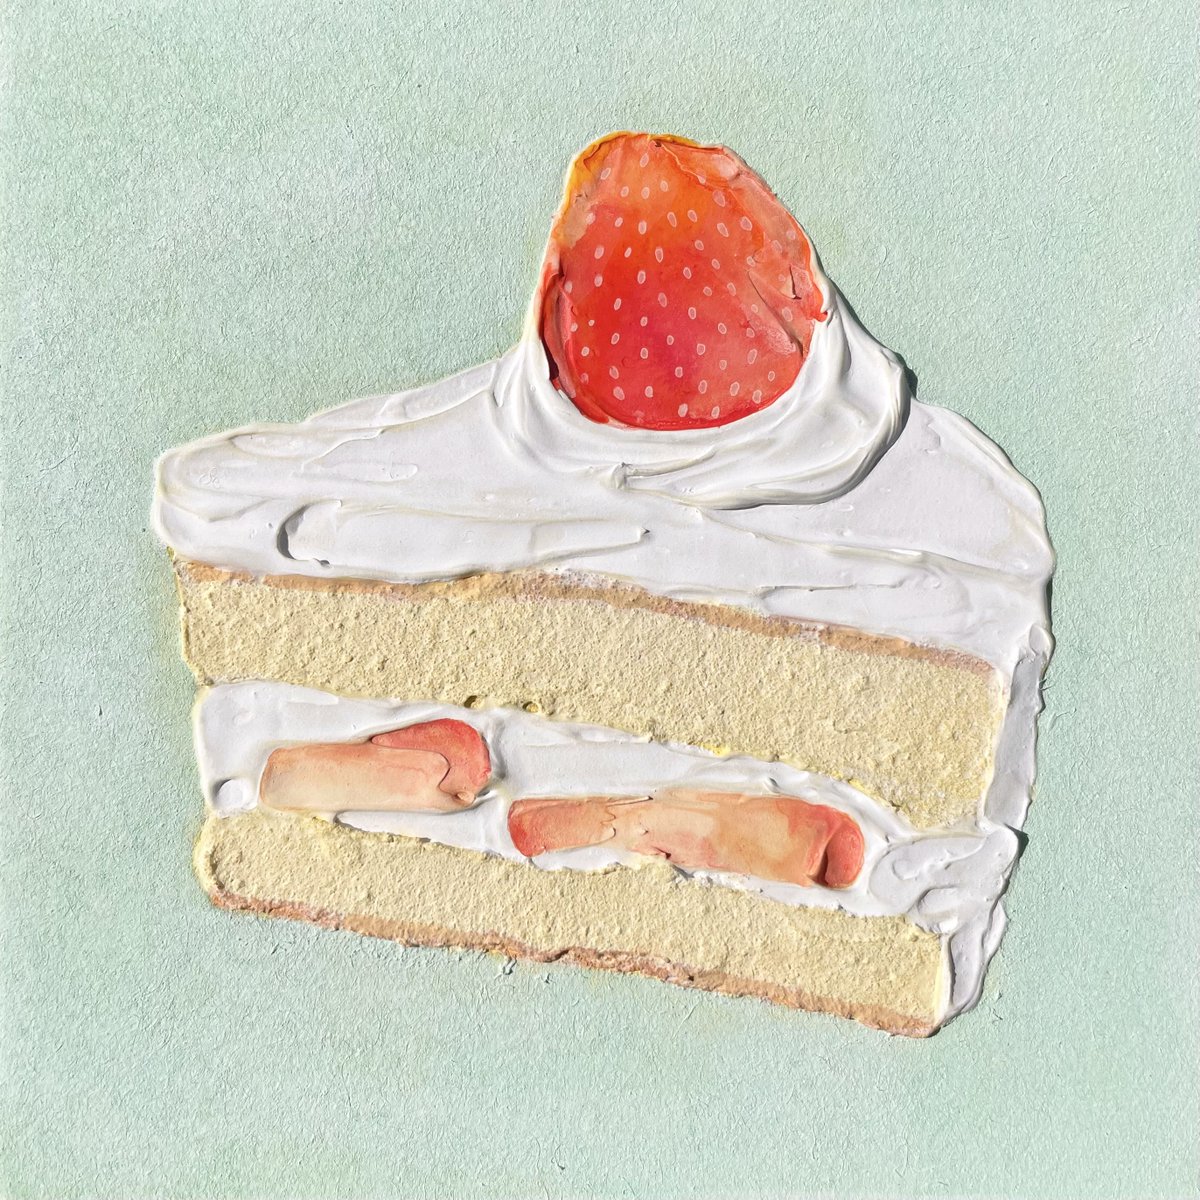 「1日遅れだけど! 私の描いた愛らしいショートケーキを見て〜!! #ショートケーキ」|𝓝𝓪𝓽𝓼𝓾𝓶𝓲🍓Natsumi Takahashiのイラスト